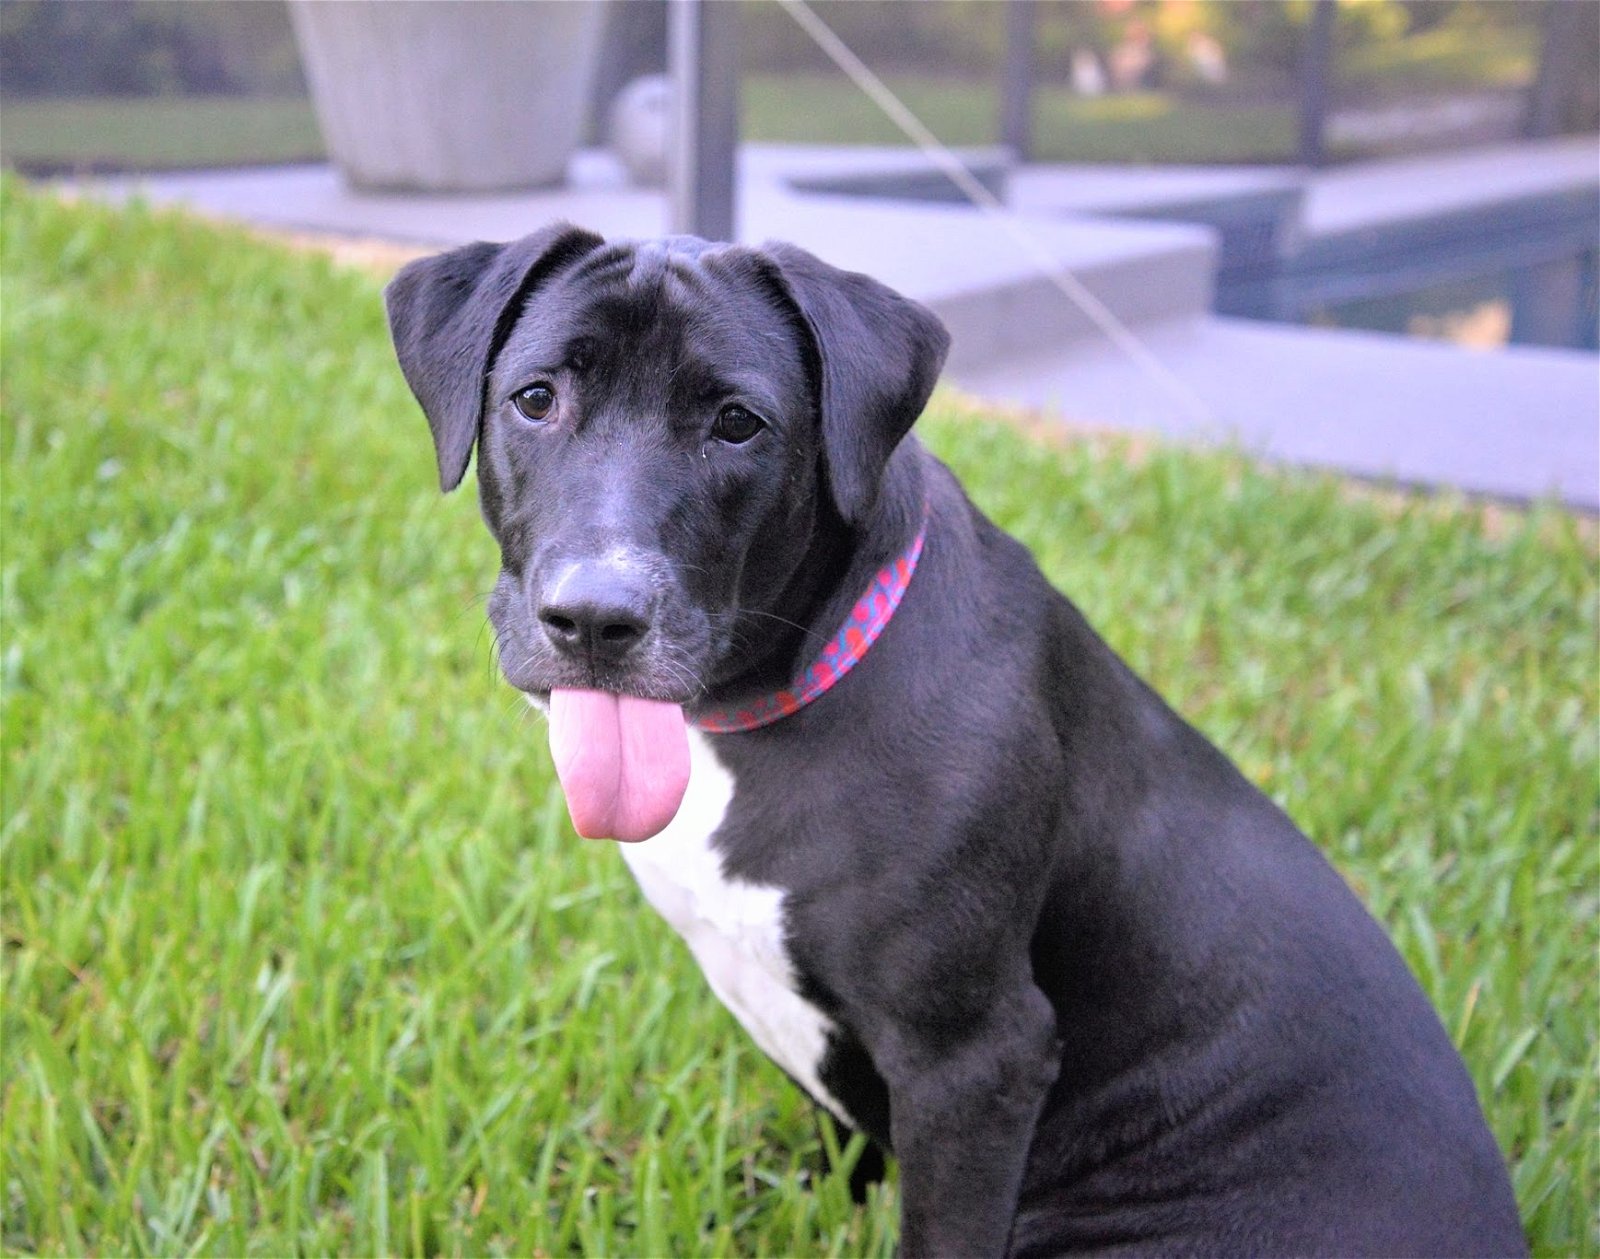 adoptable Dog in Gainesville, FL named Liesl